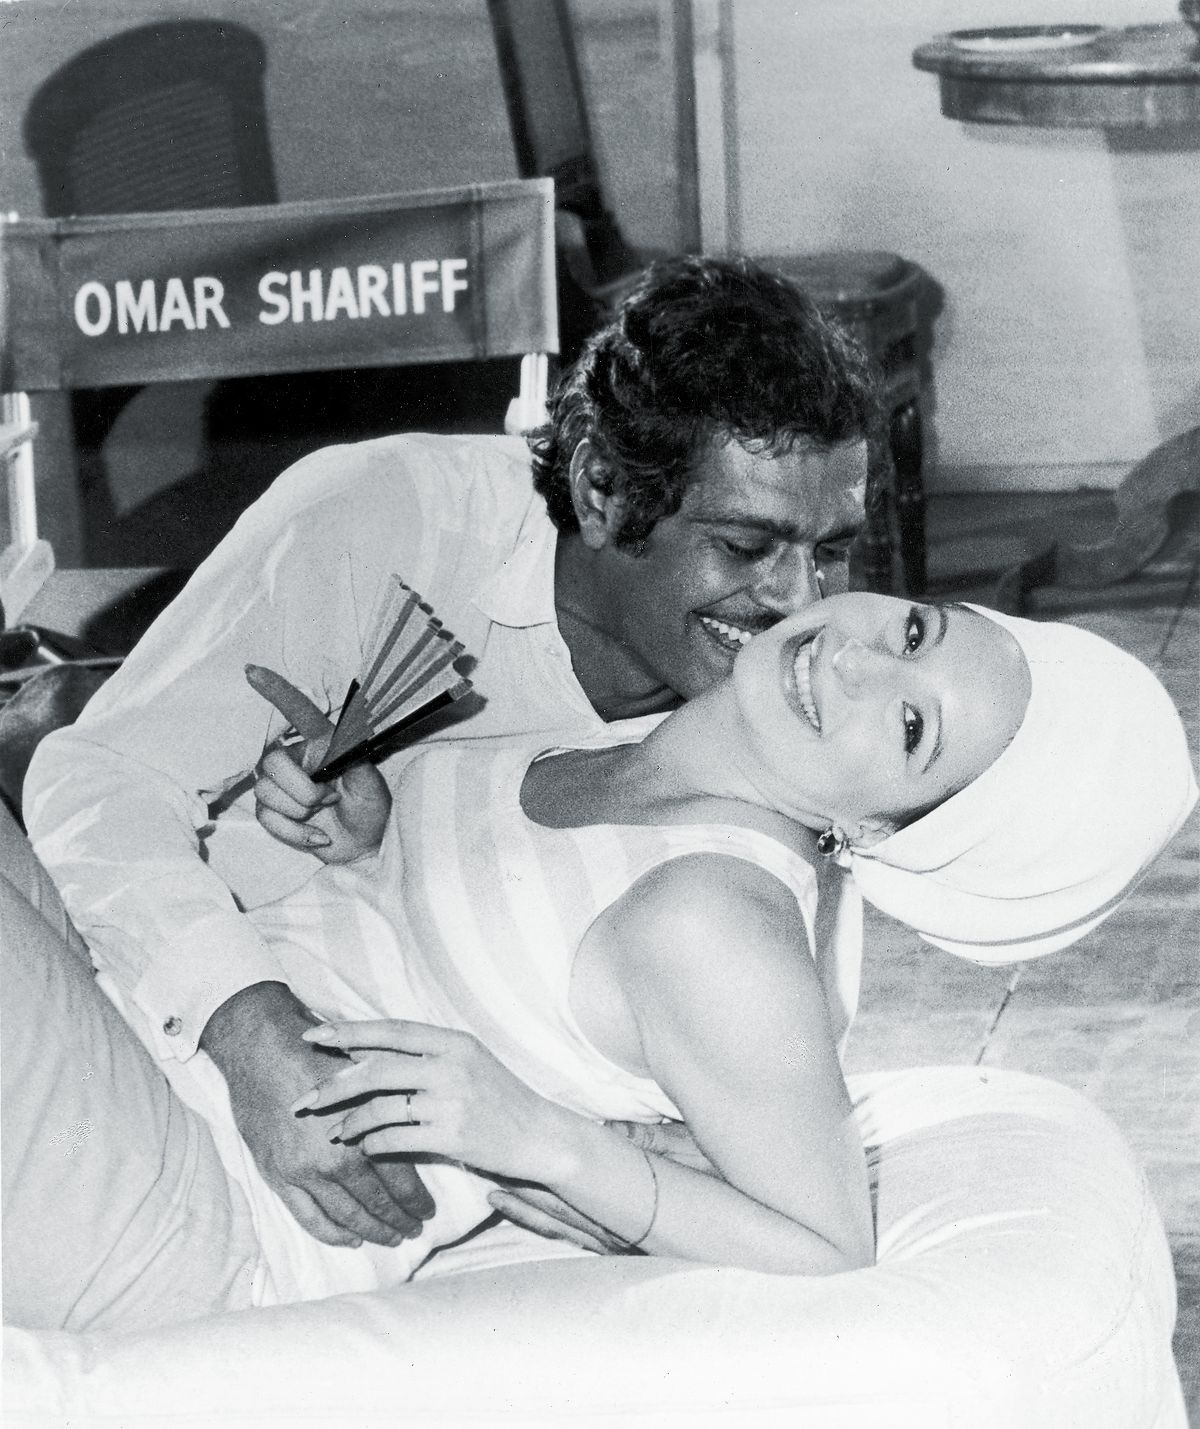 С Омаром Шарифом воссоздают любовную сцену из фильма 1968 года «Смешная девчонка»